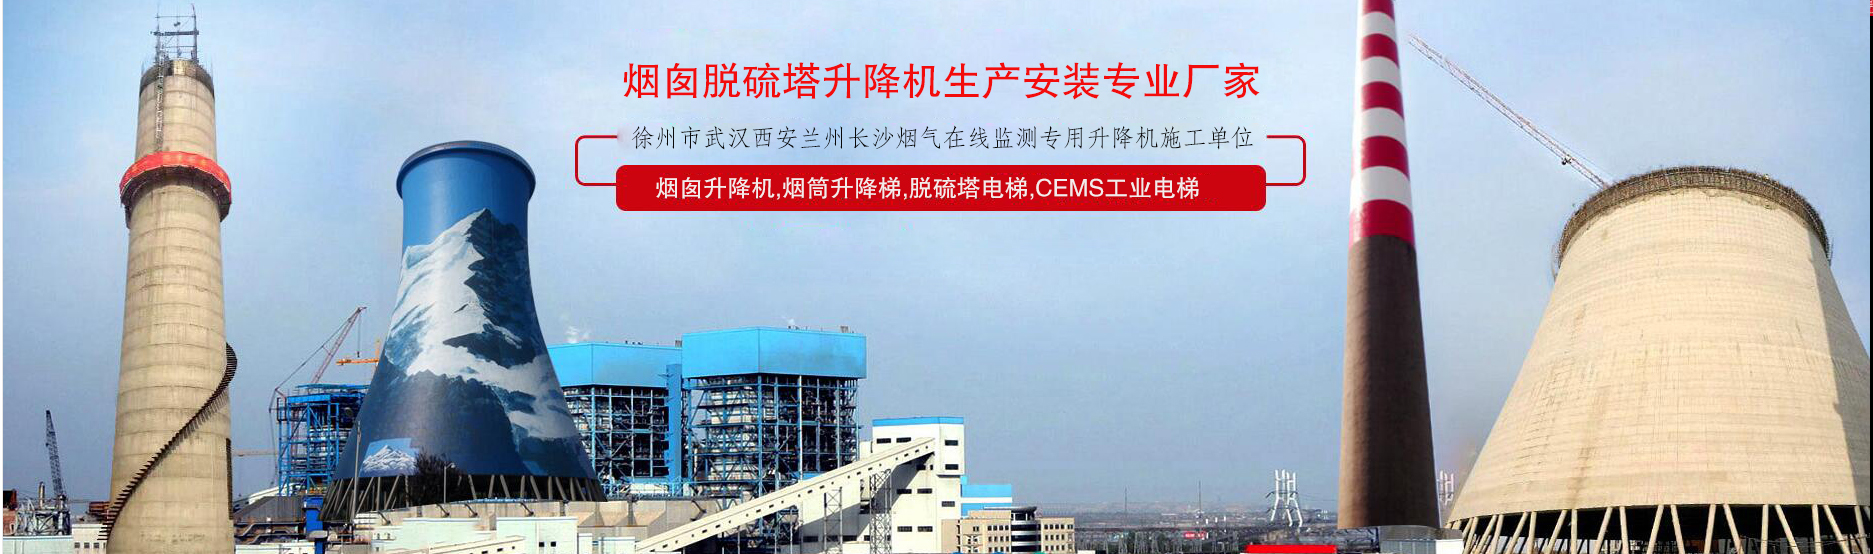 烟筒工业升降机—筒仓工业升降梯—上海潜龙烟筒厂家